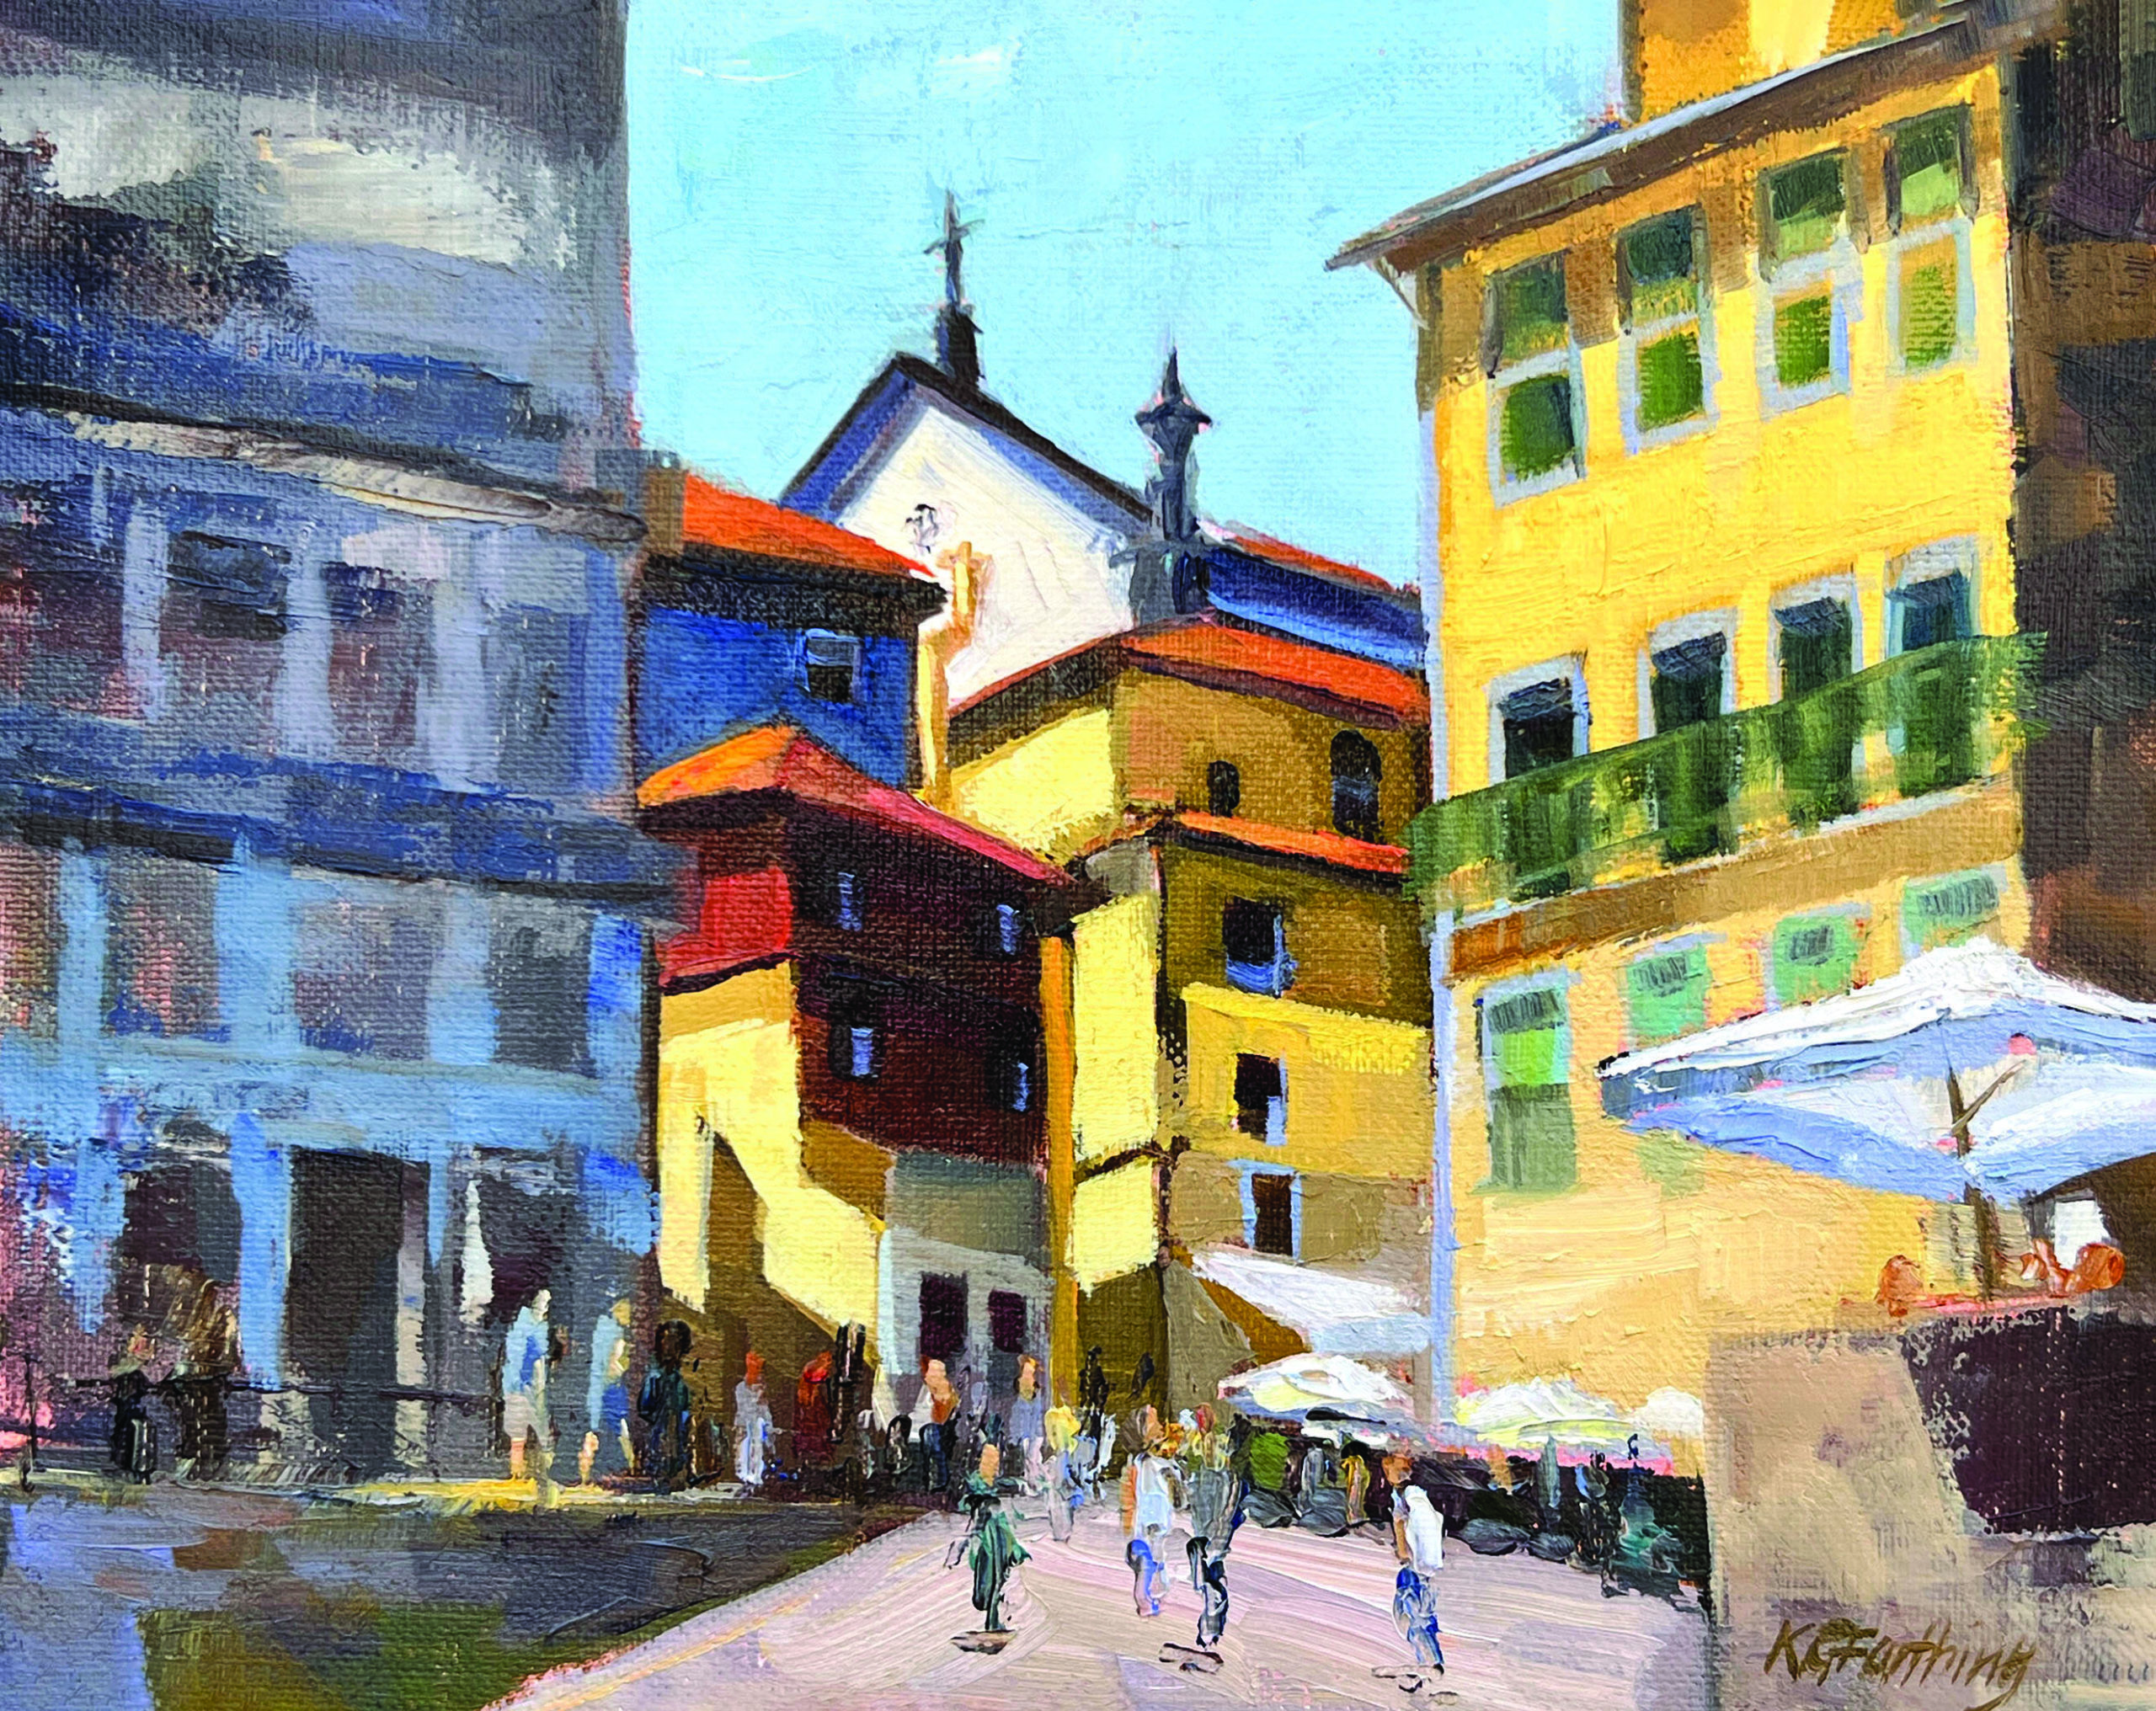 Oil paintings of city scenes